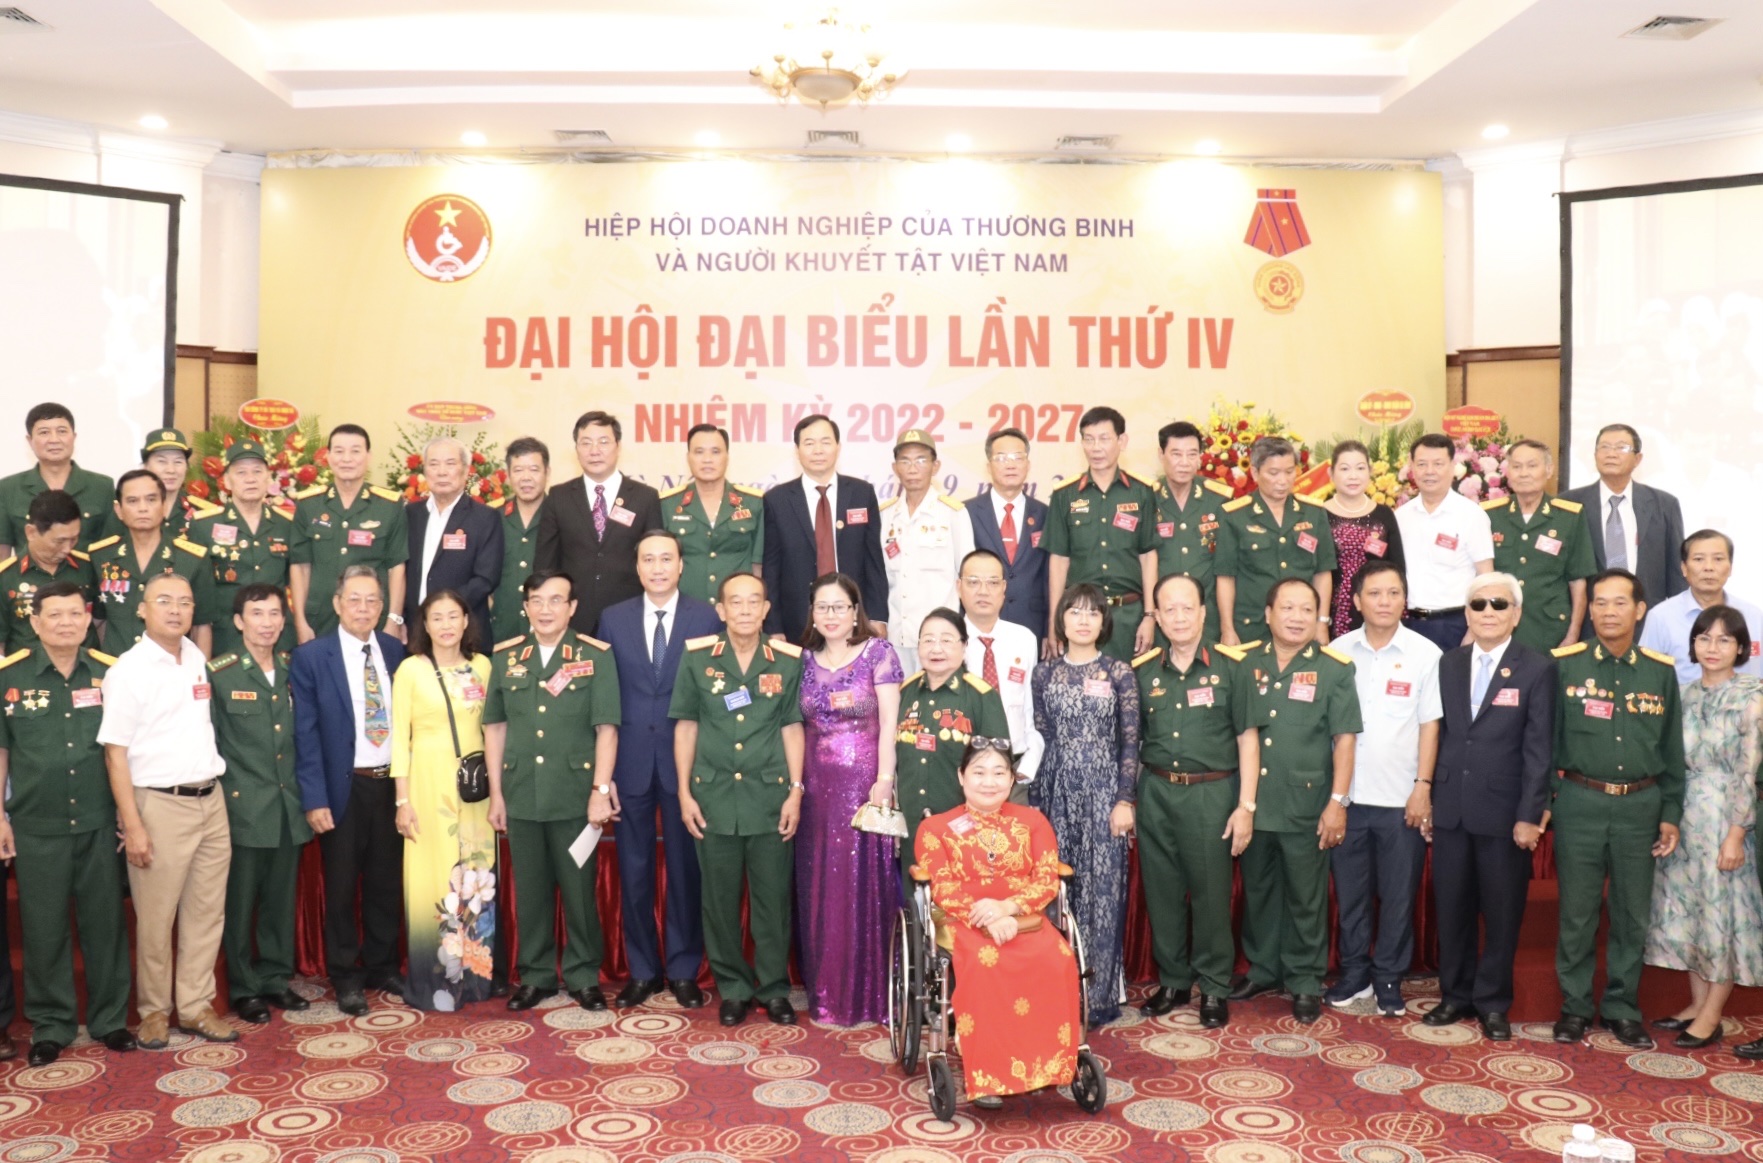 Đại hội lần thứ IV Hiệp hội Doanh nghiệp của thương binh và người khuyết tật Việt Nam